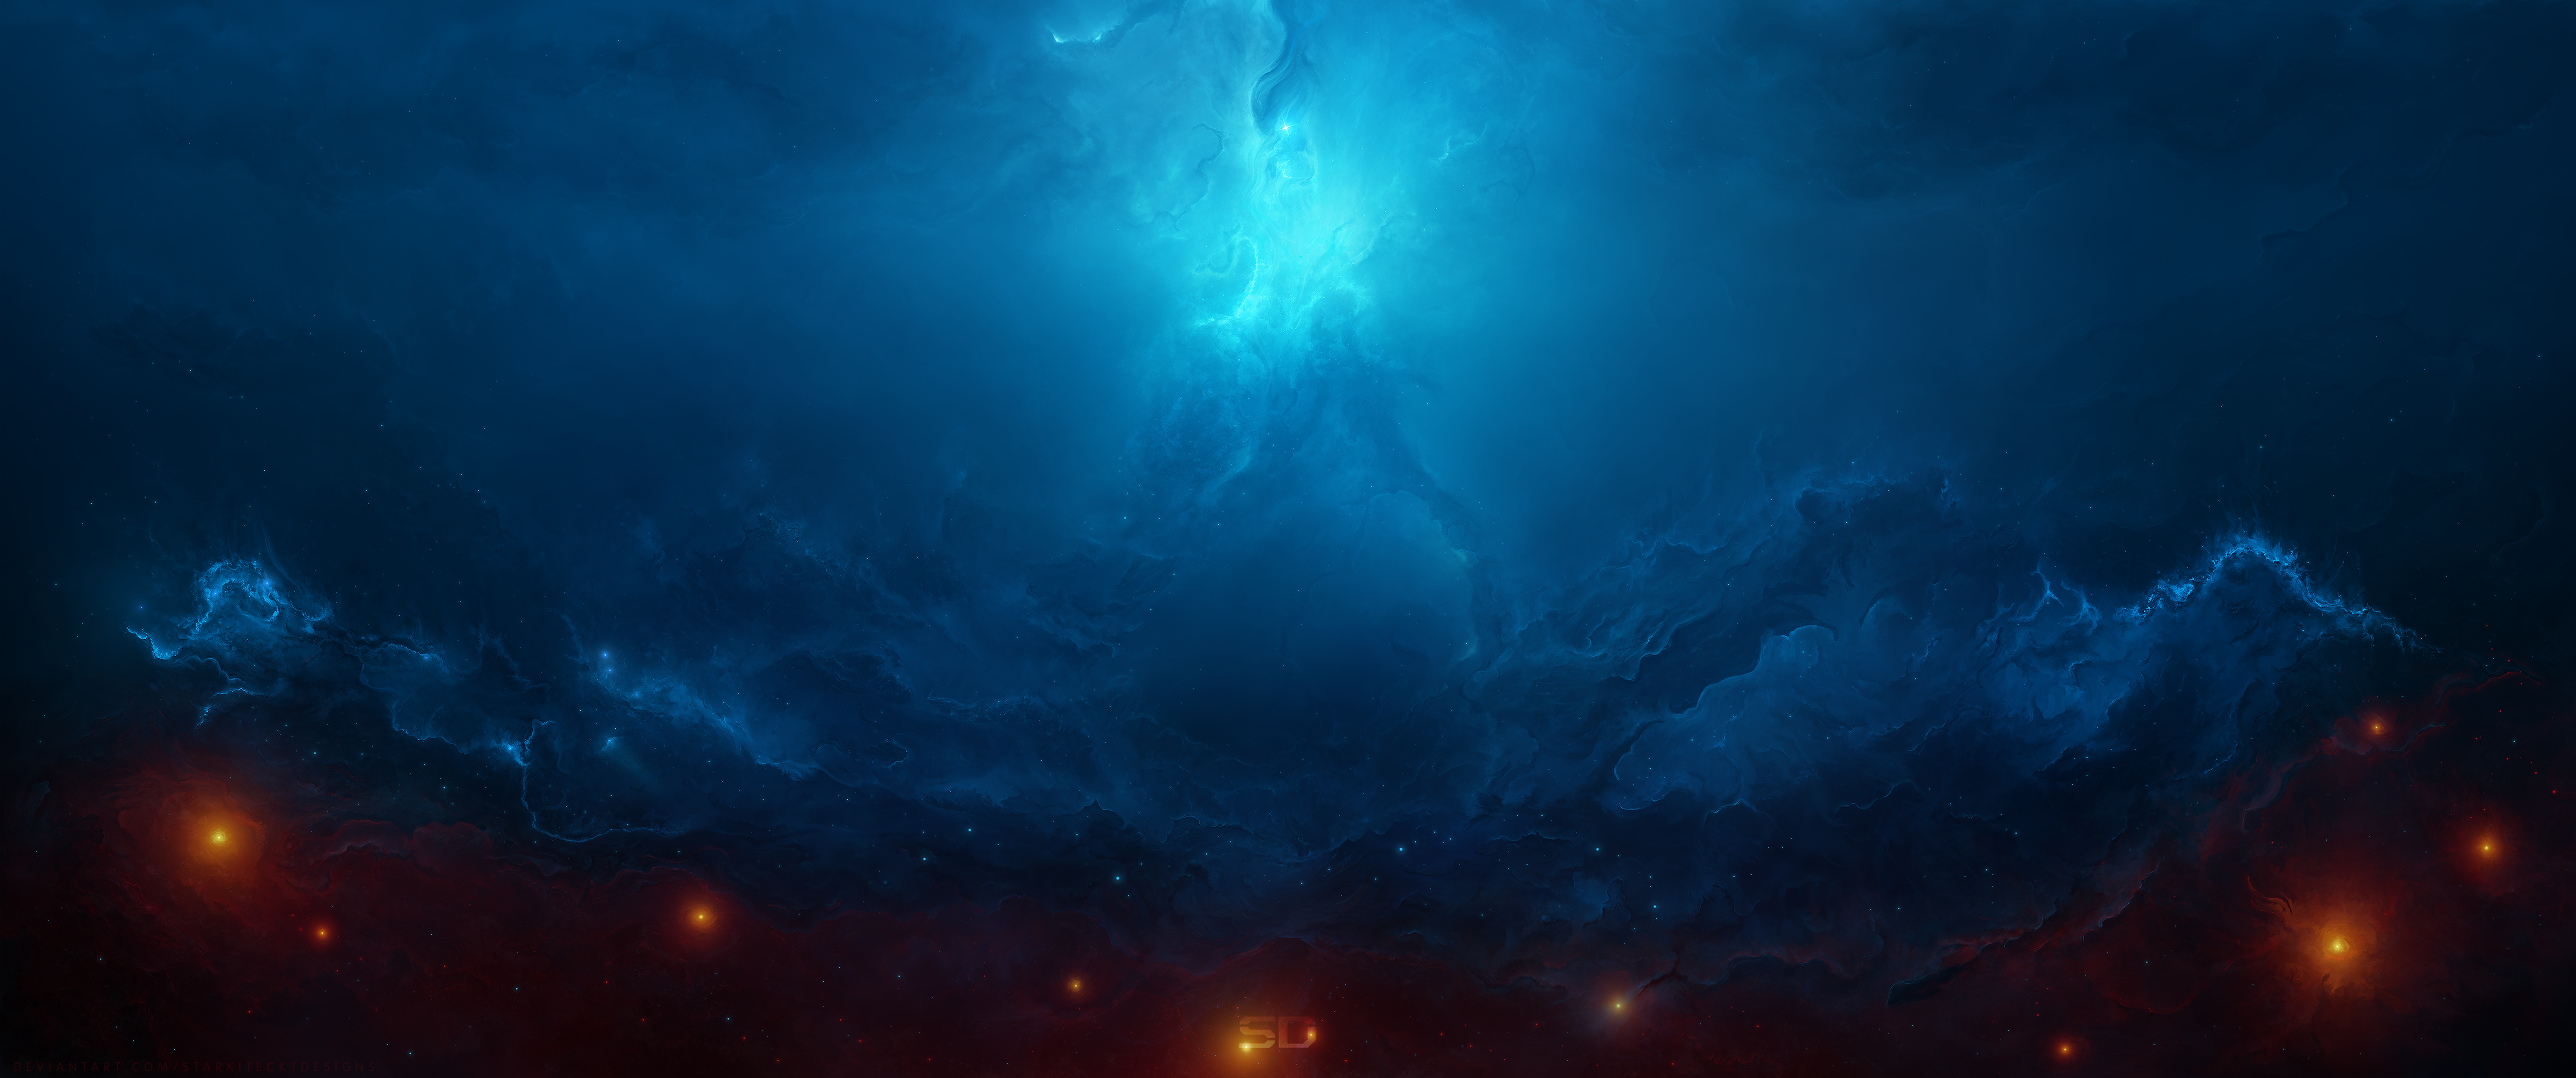 Arch Nebula by Starkiteckt